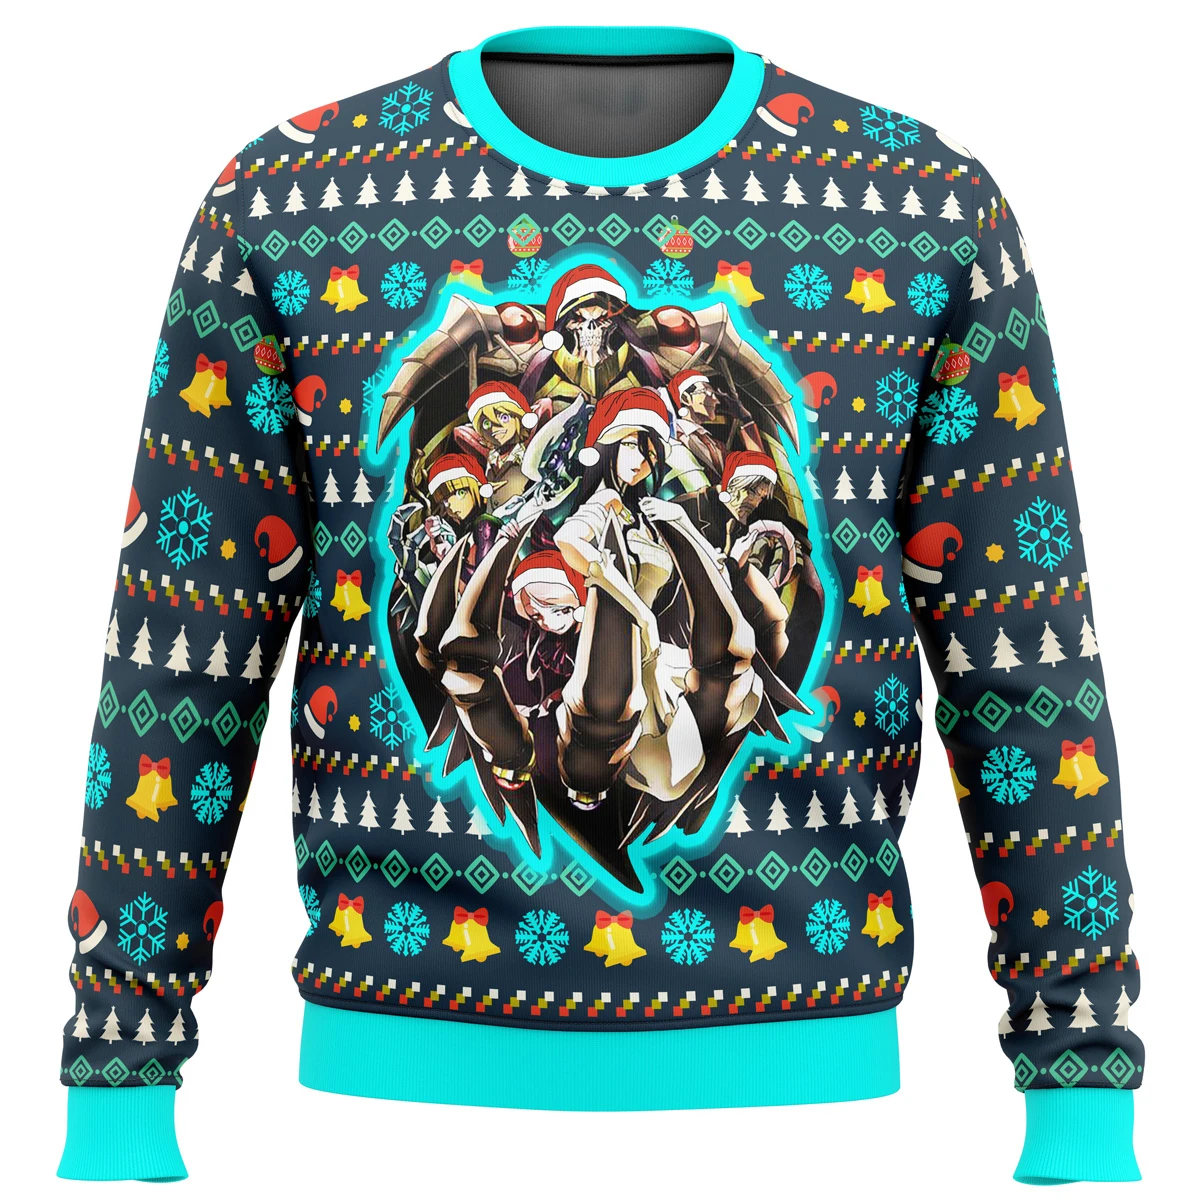 

Пуловер Overlord с Гильдией темноты, Уродливый Рождественский свитер, Подарочный пуловер с Санта-Клаусом, Мужская трехмерная Толстовка и топ на осень и зиму